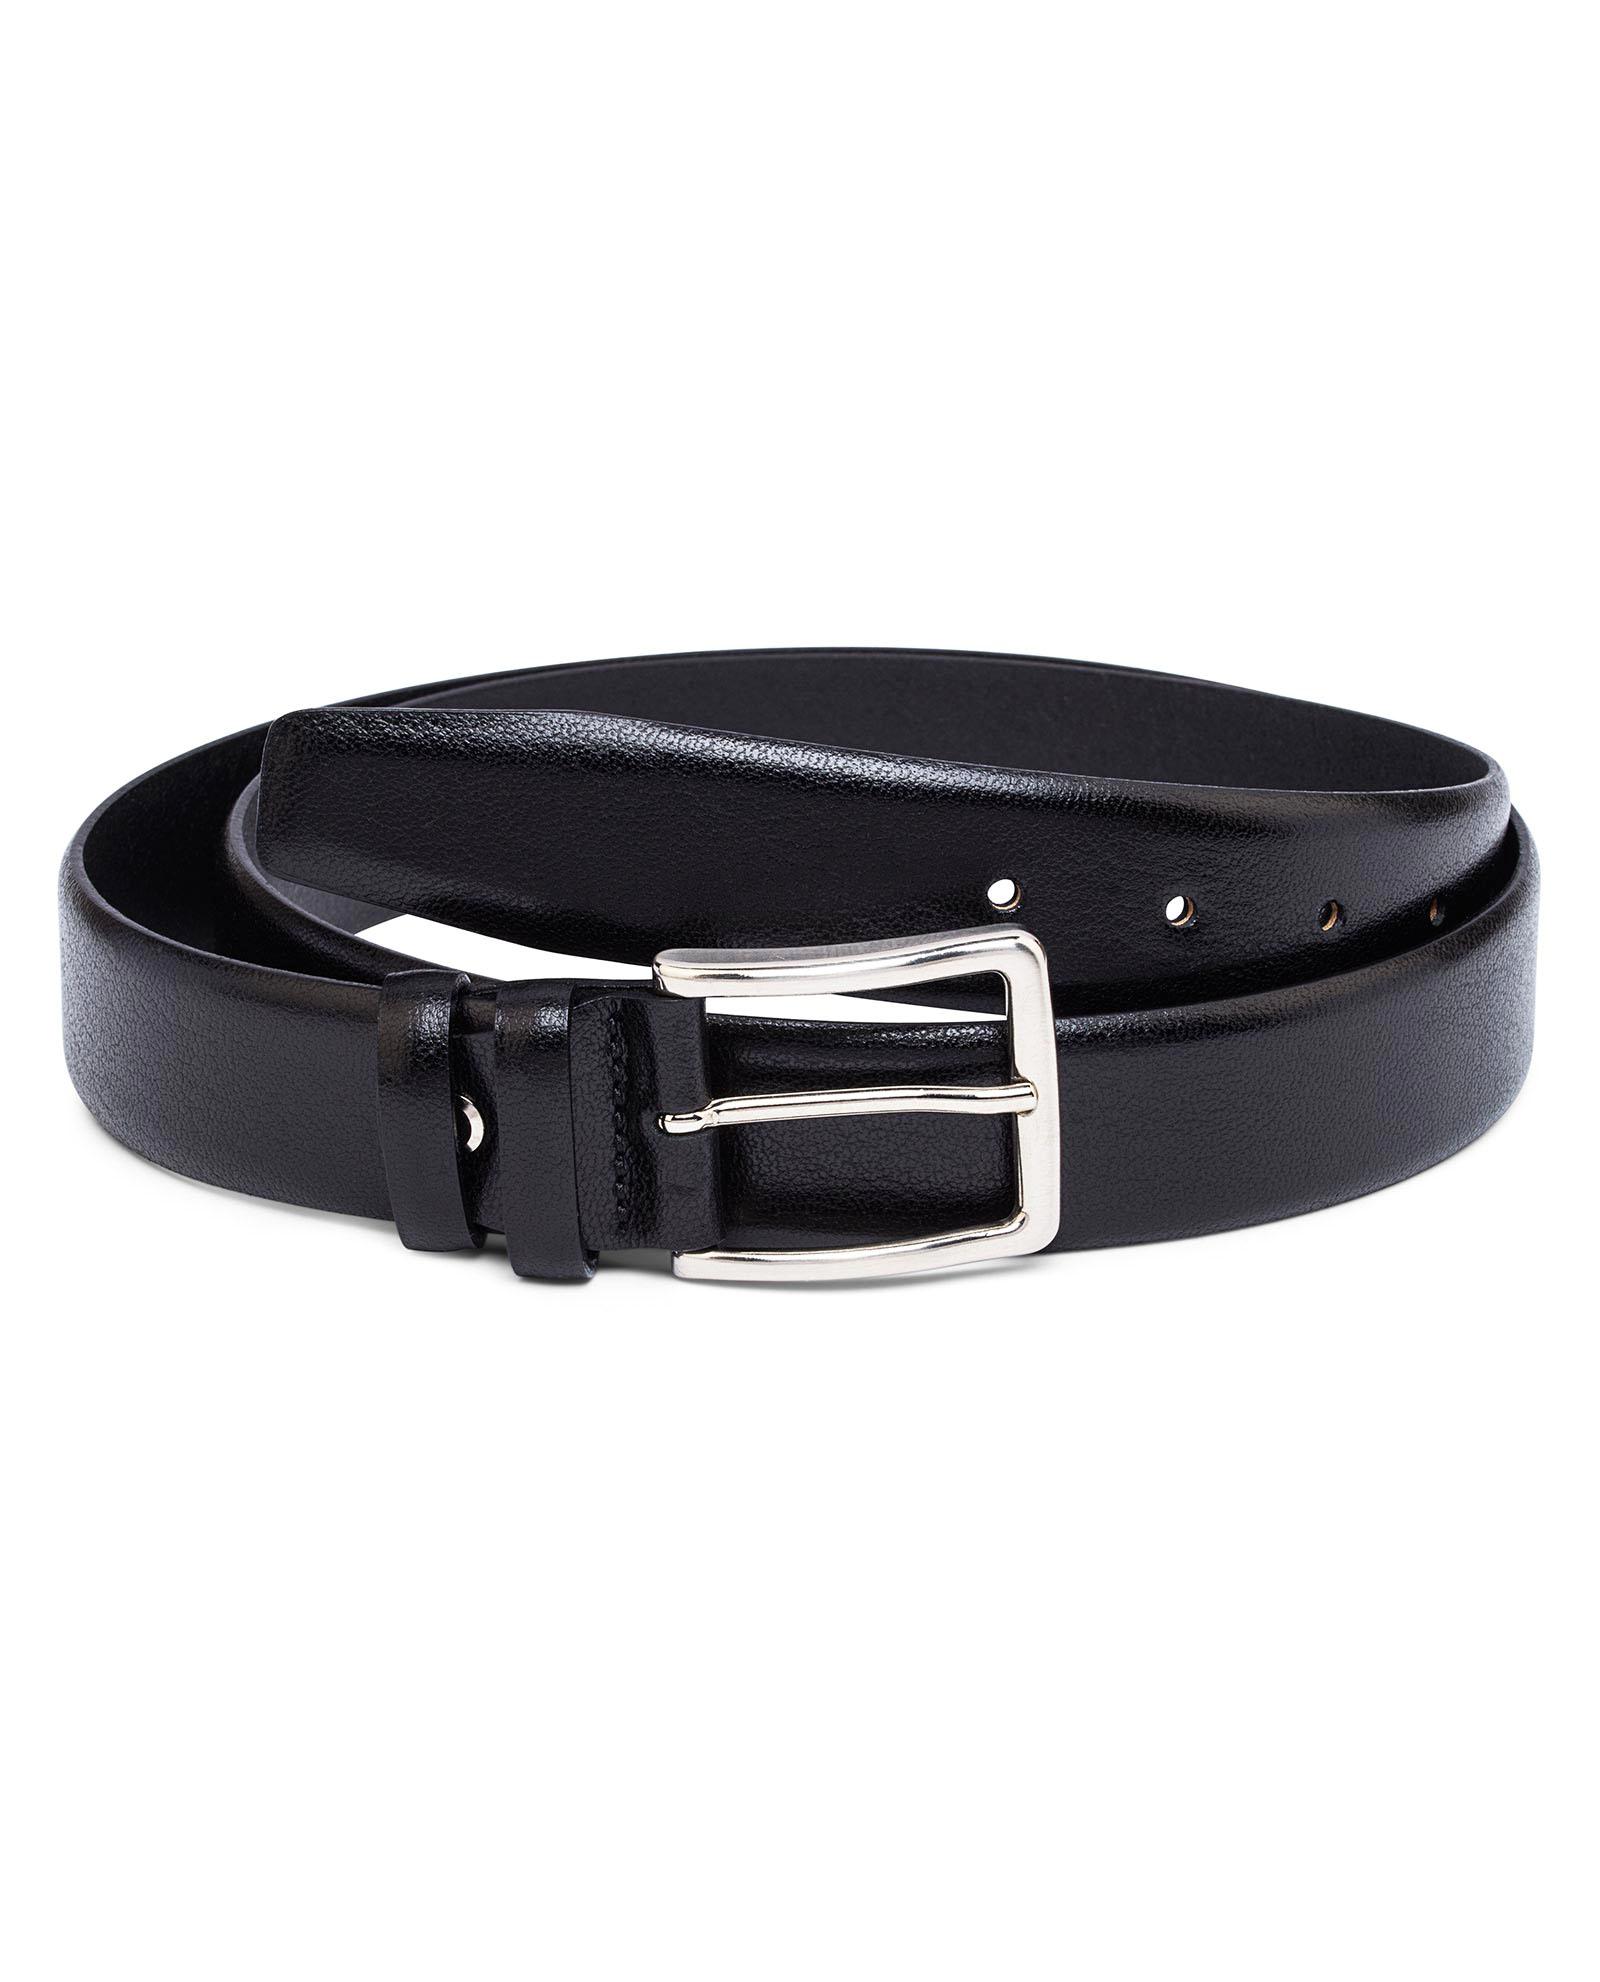 Men's black smooth leather belt